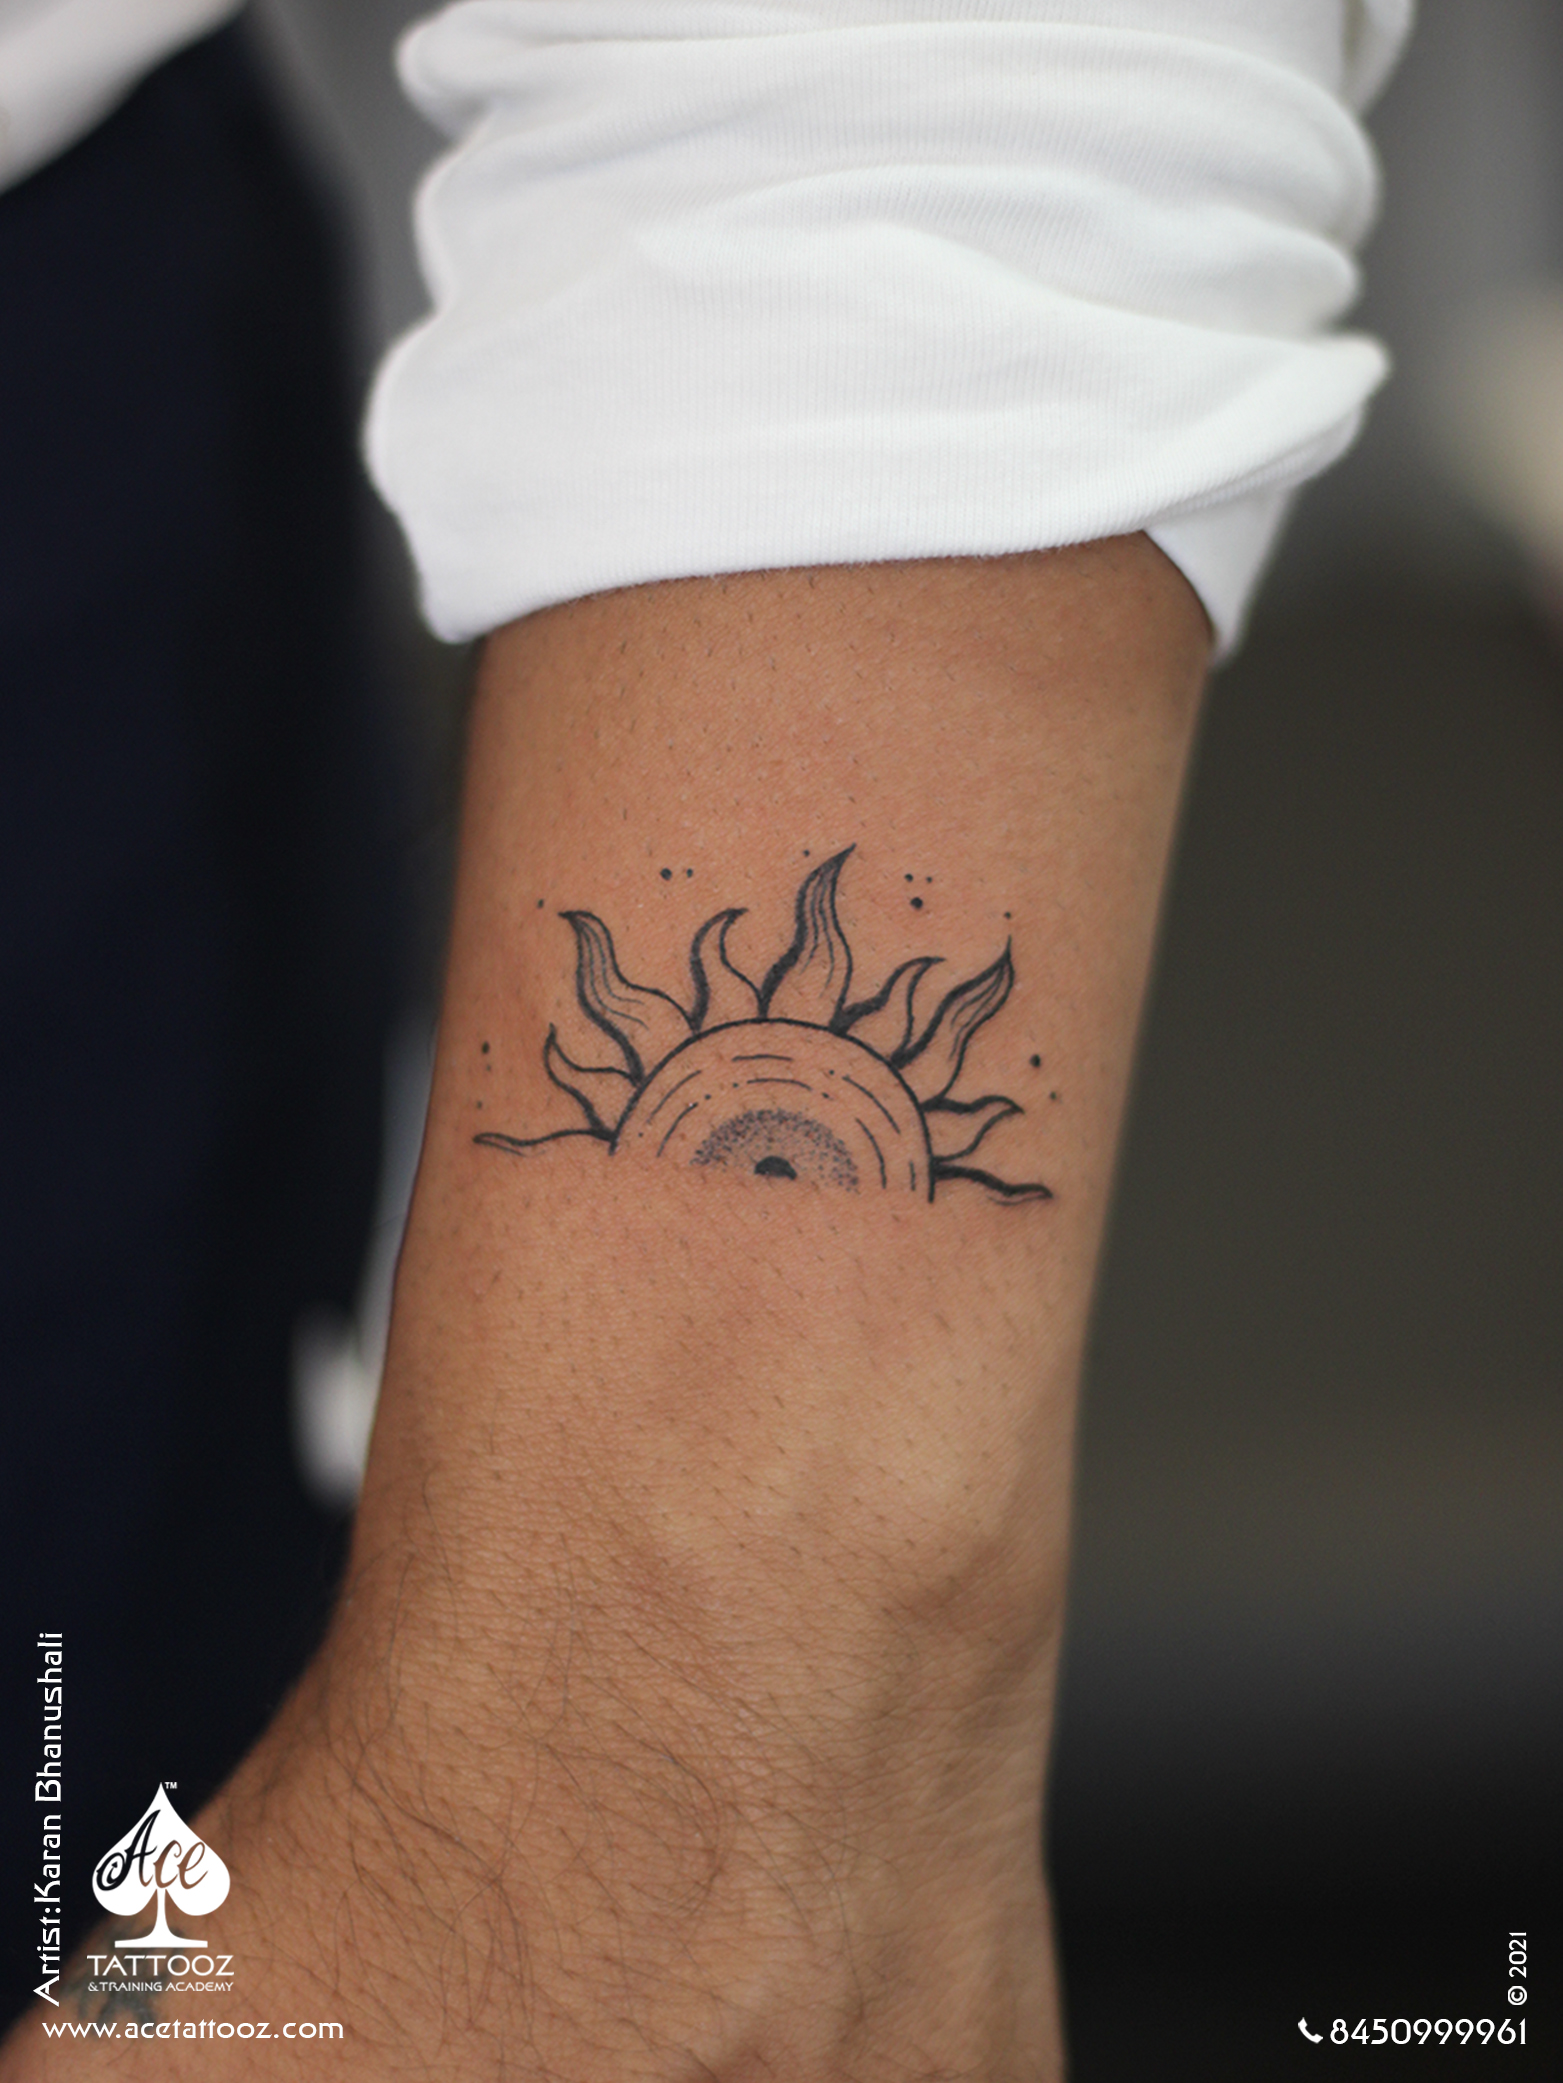 Eternal Sunshine Of The Spotless Mind Tattoo  Get an InkGet an Ink